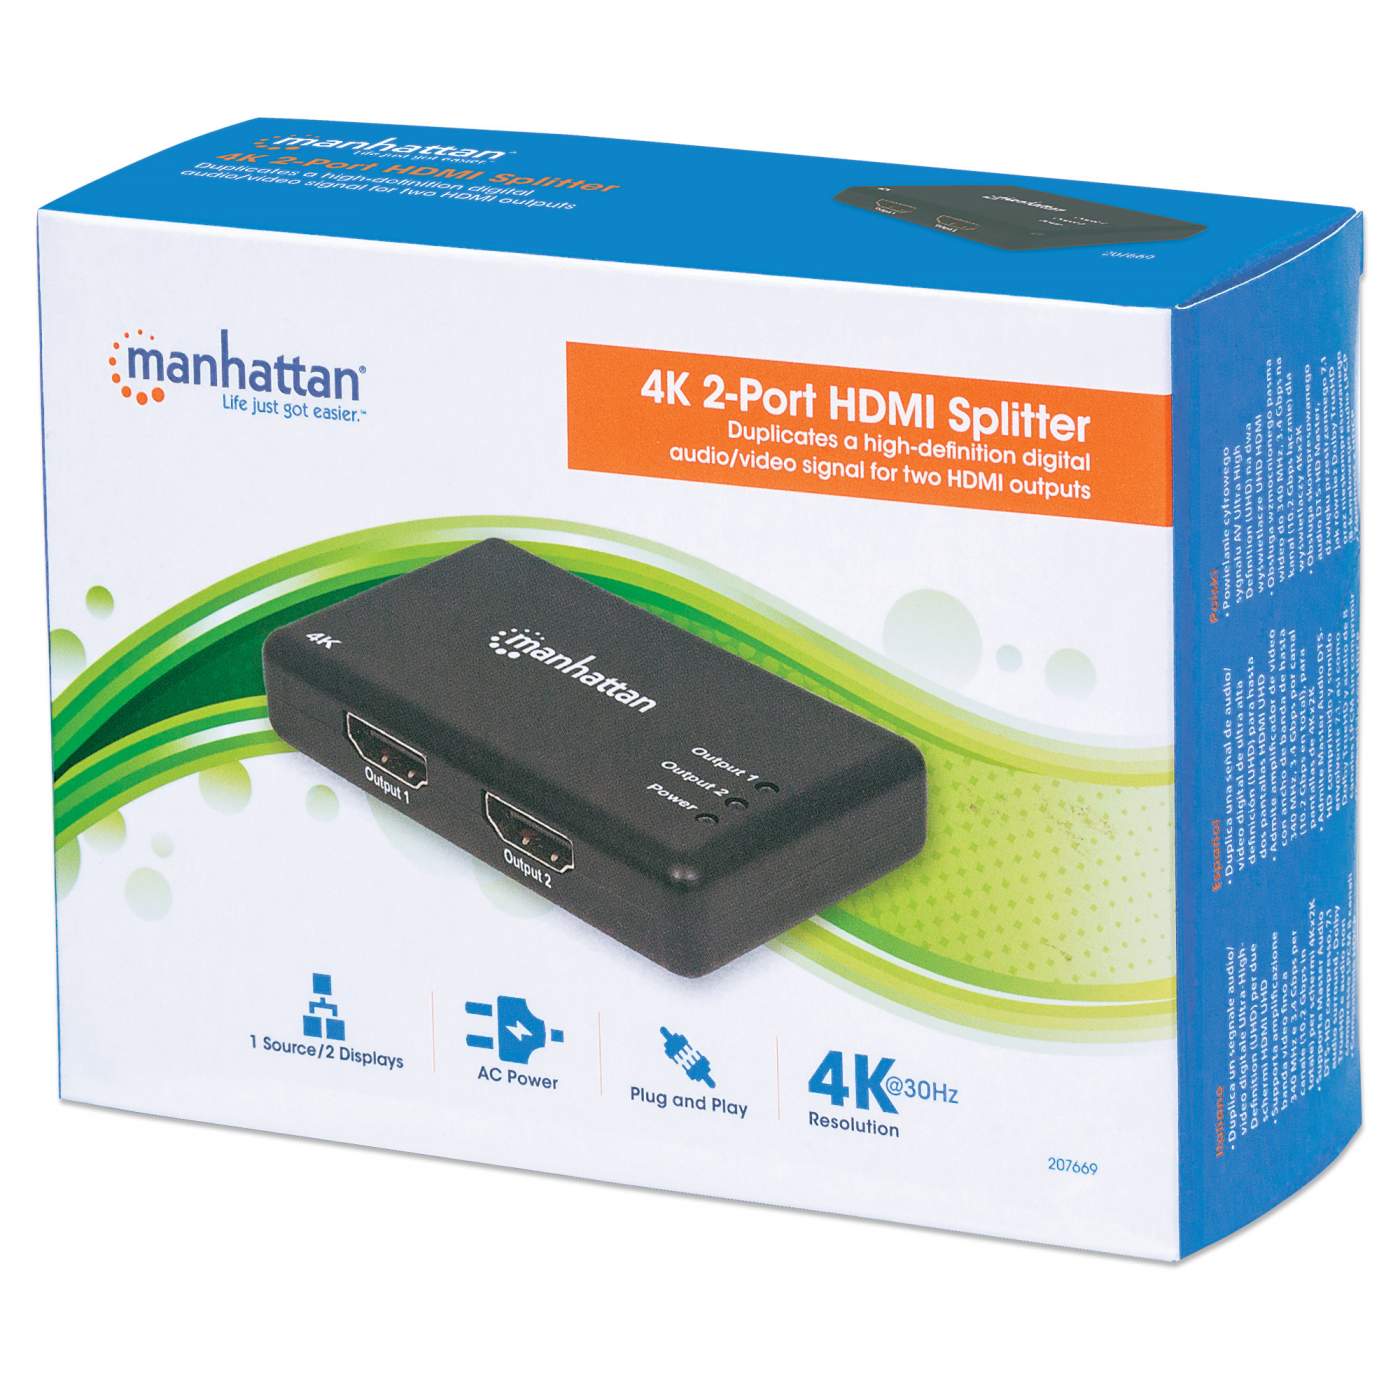 4K 2-Port HDMI Splitter Packaging Image 2